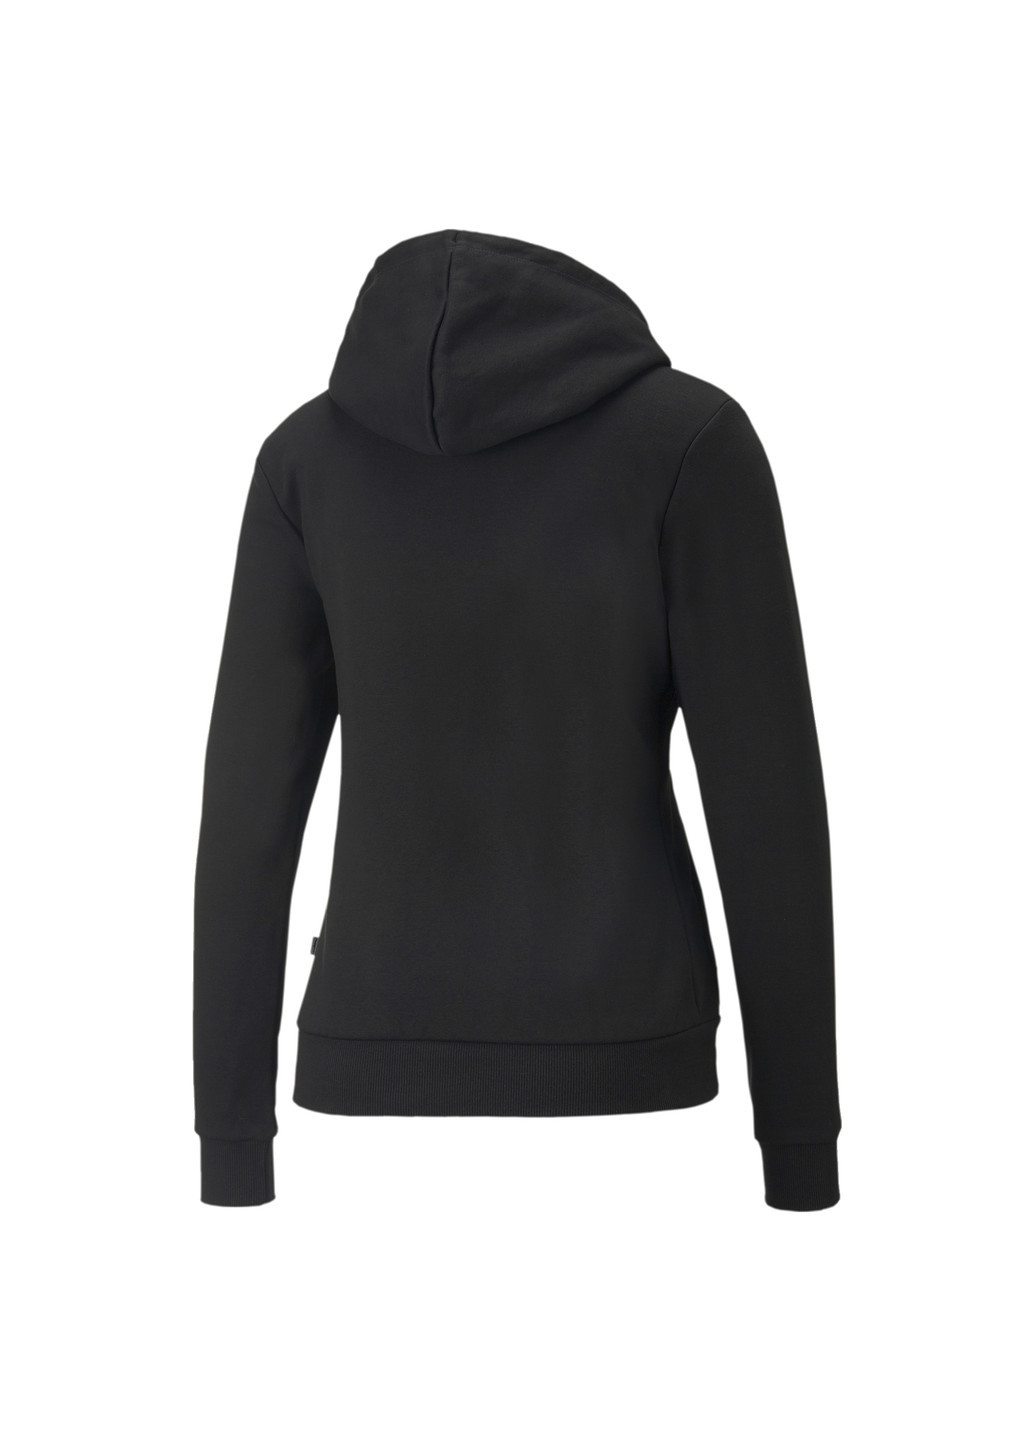 Чорна спортивна толстовка essentials full-length women’s hoodie Puma однотонна